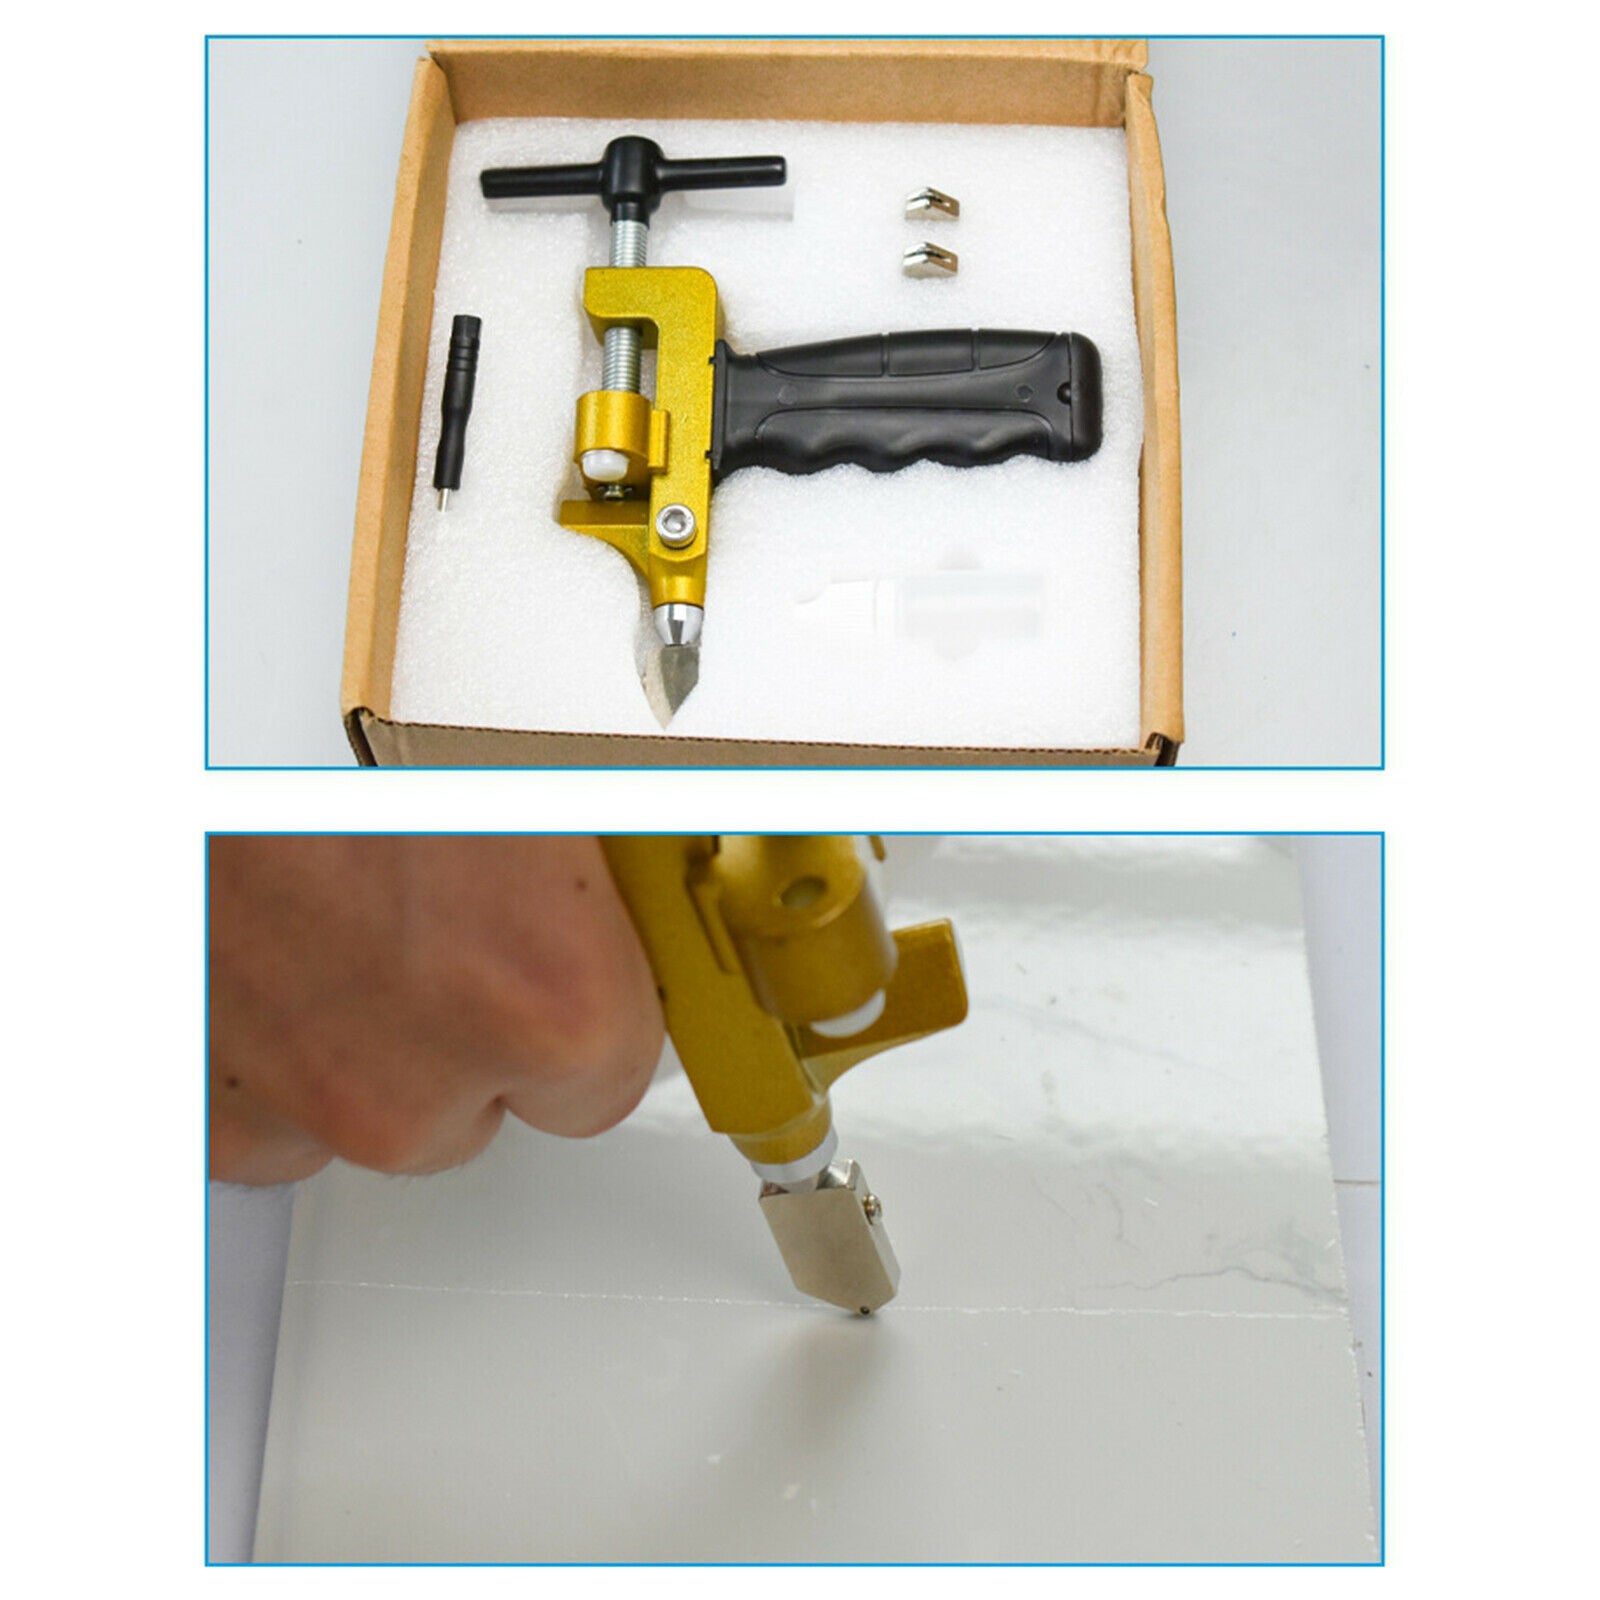 2 In 1 Professional Hand Tile Cutter Glass Cutter Breaker Ceramic Opener